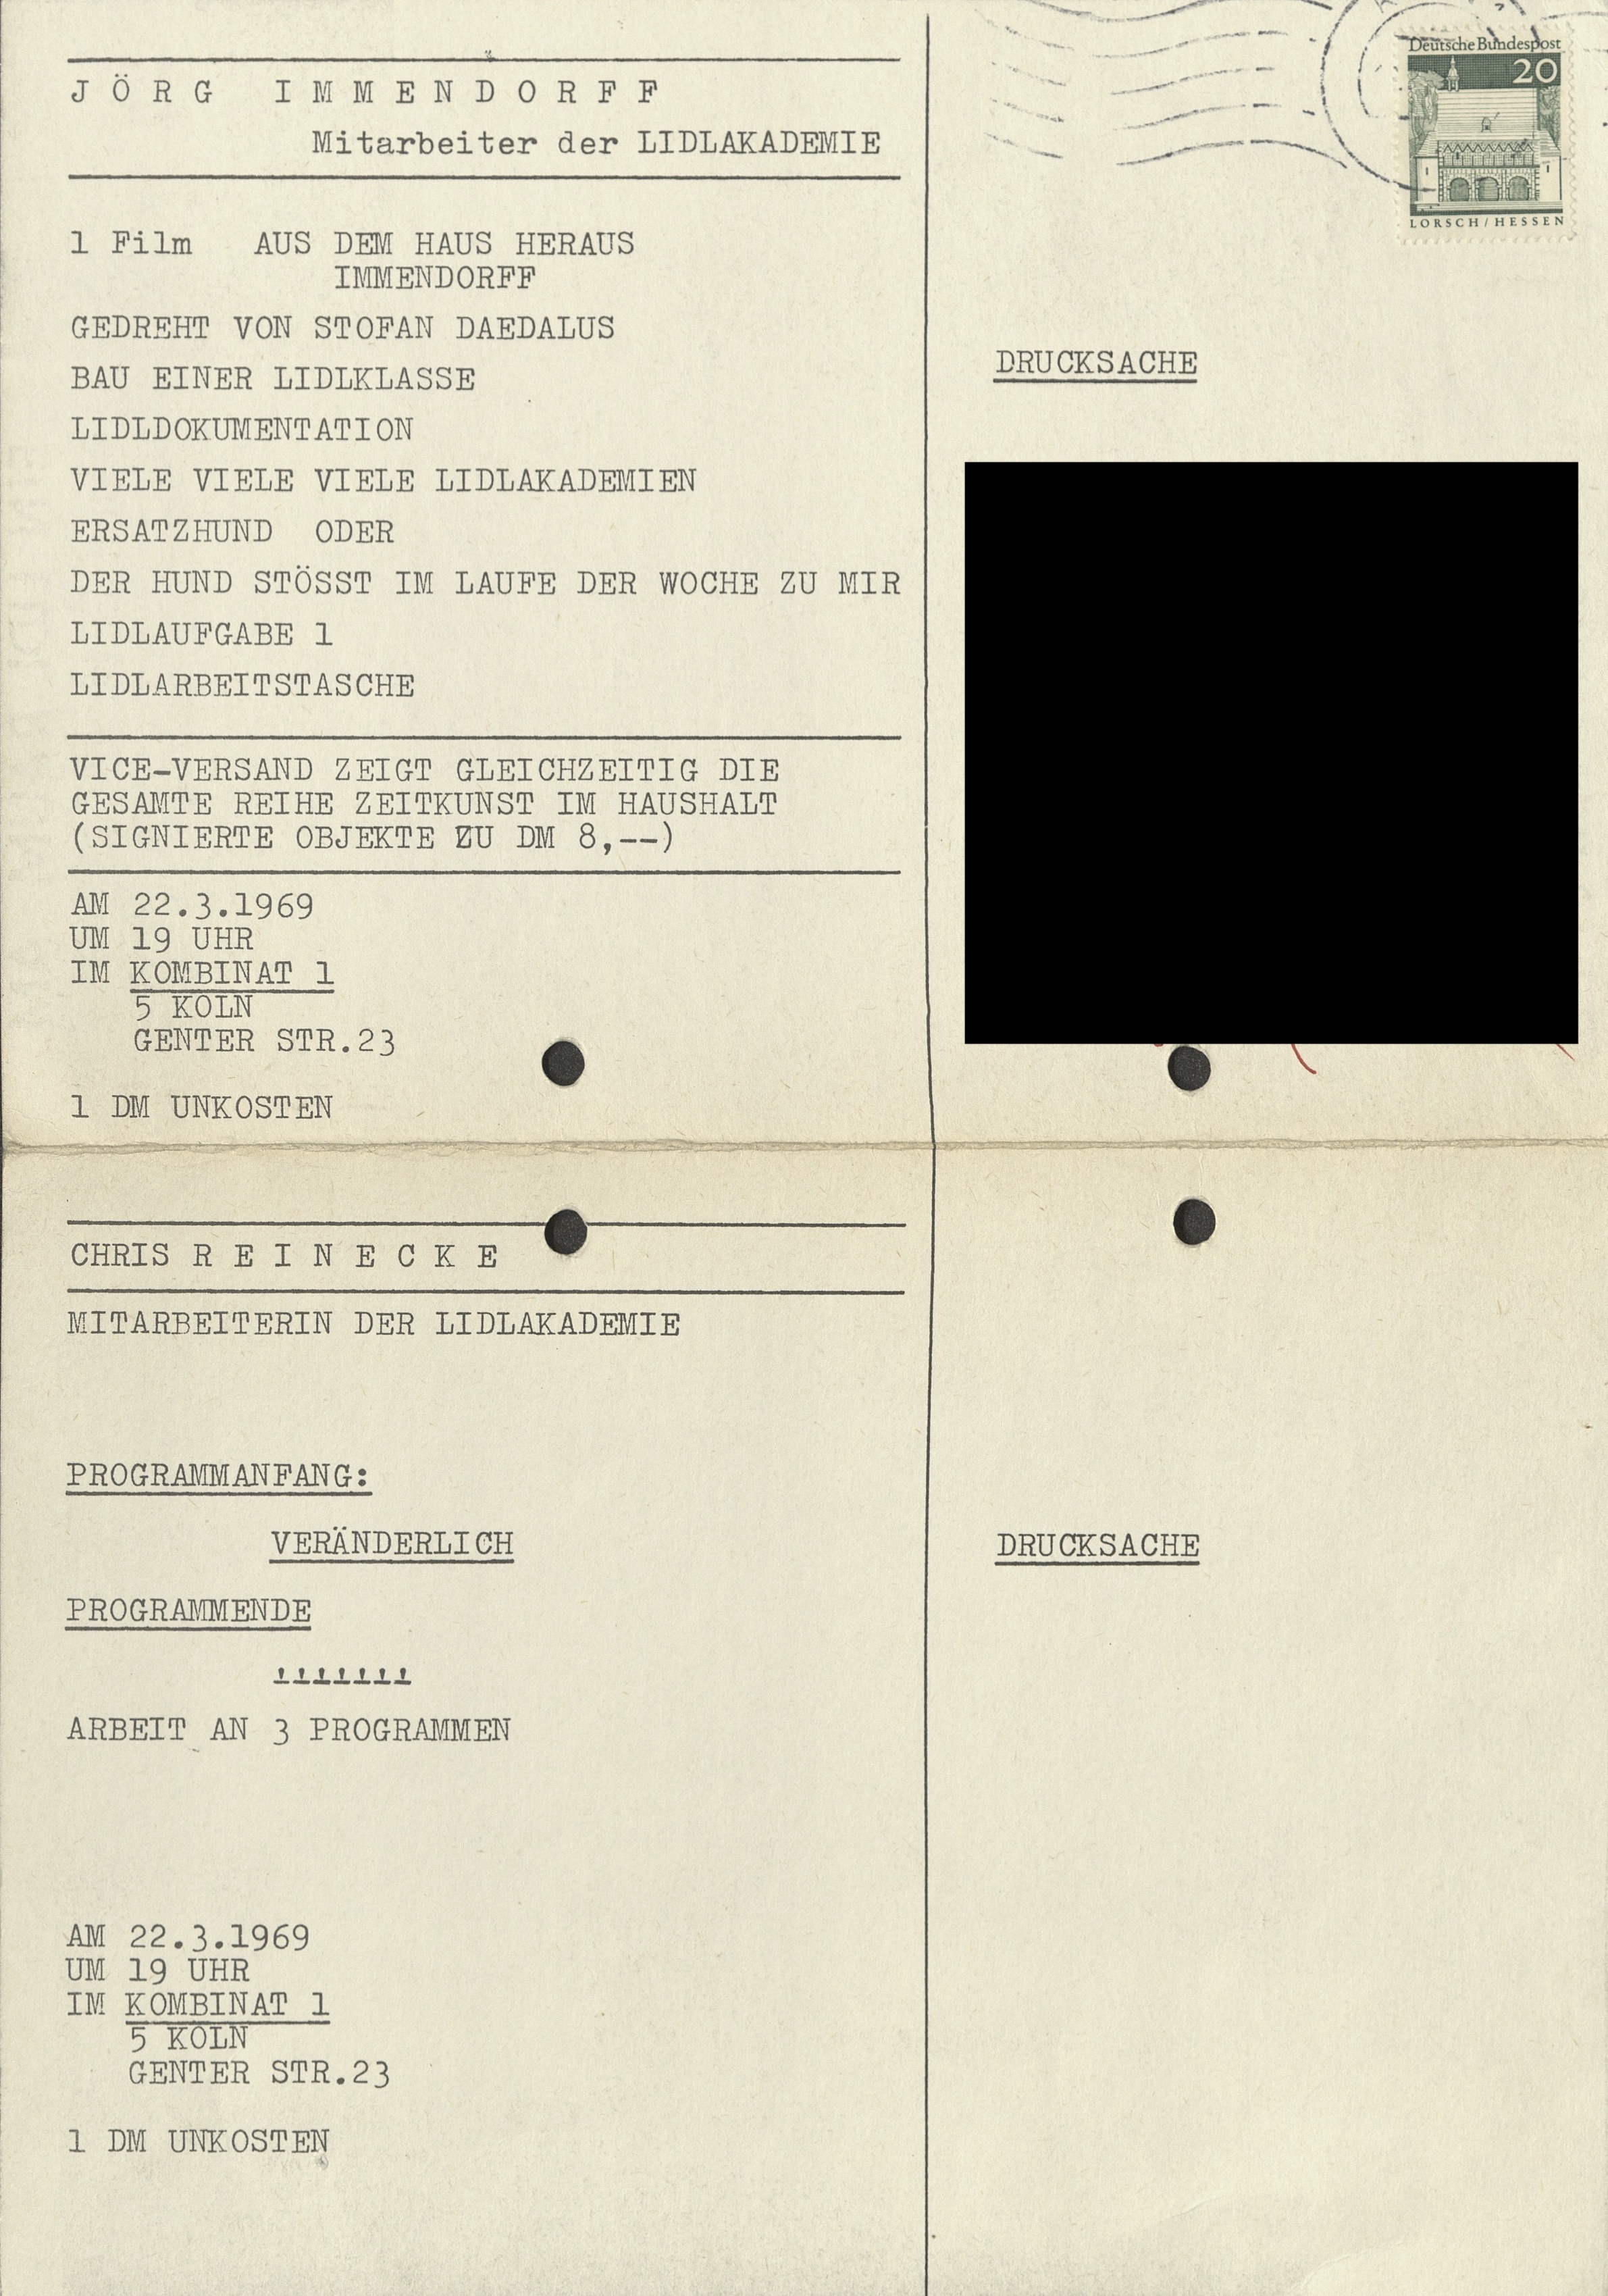 LIDLAKADEMIE, Jörg Immendorf & Chris Reinecke, Kombinat 1, Cologne 1969 (Invitation); Archiv der Avantgarden, Staatliche Kunstsammlungen Dresden